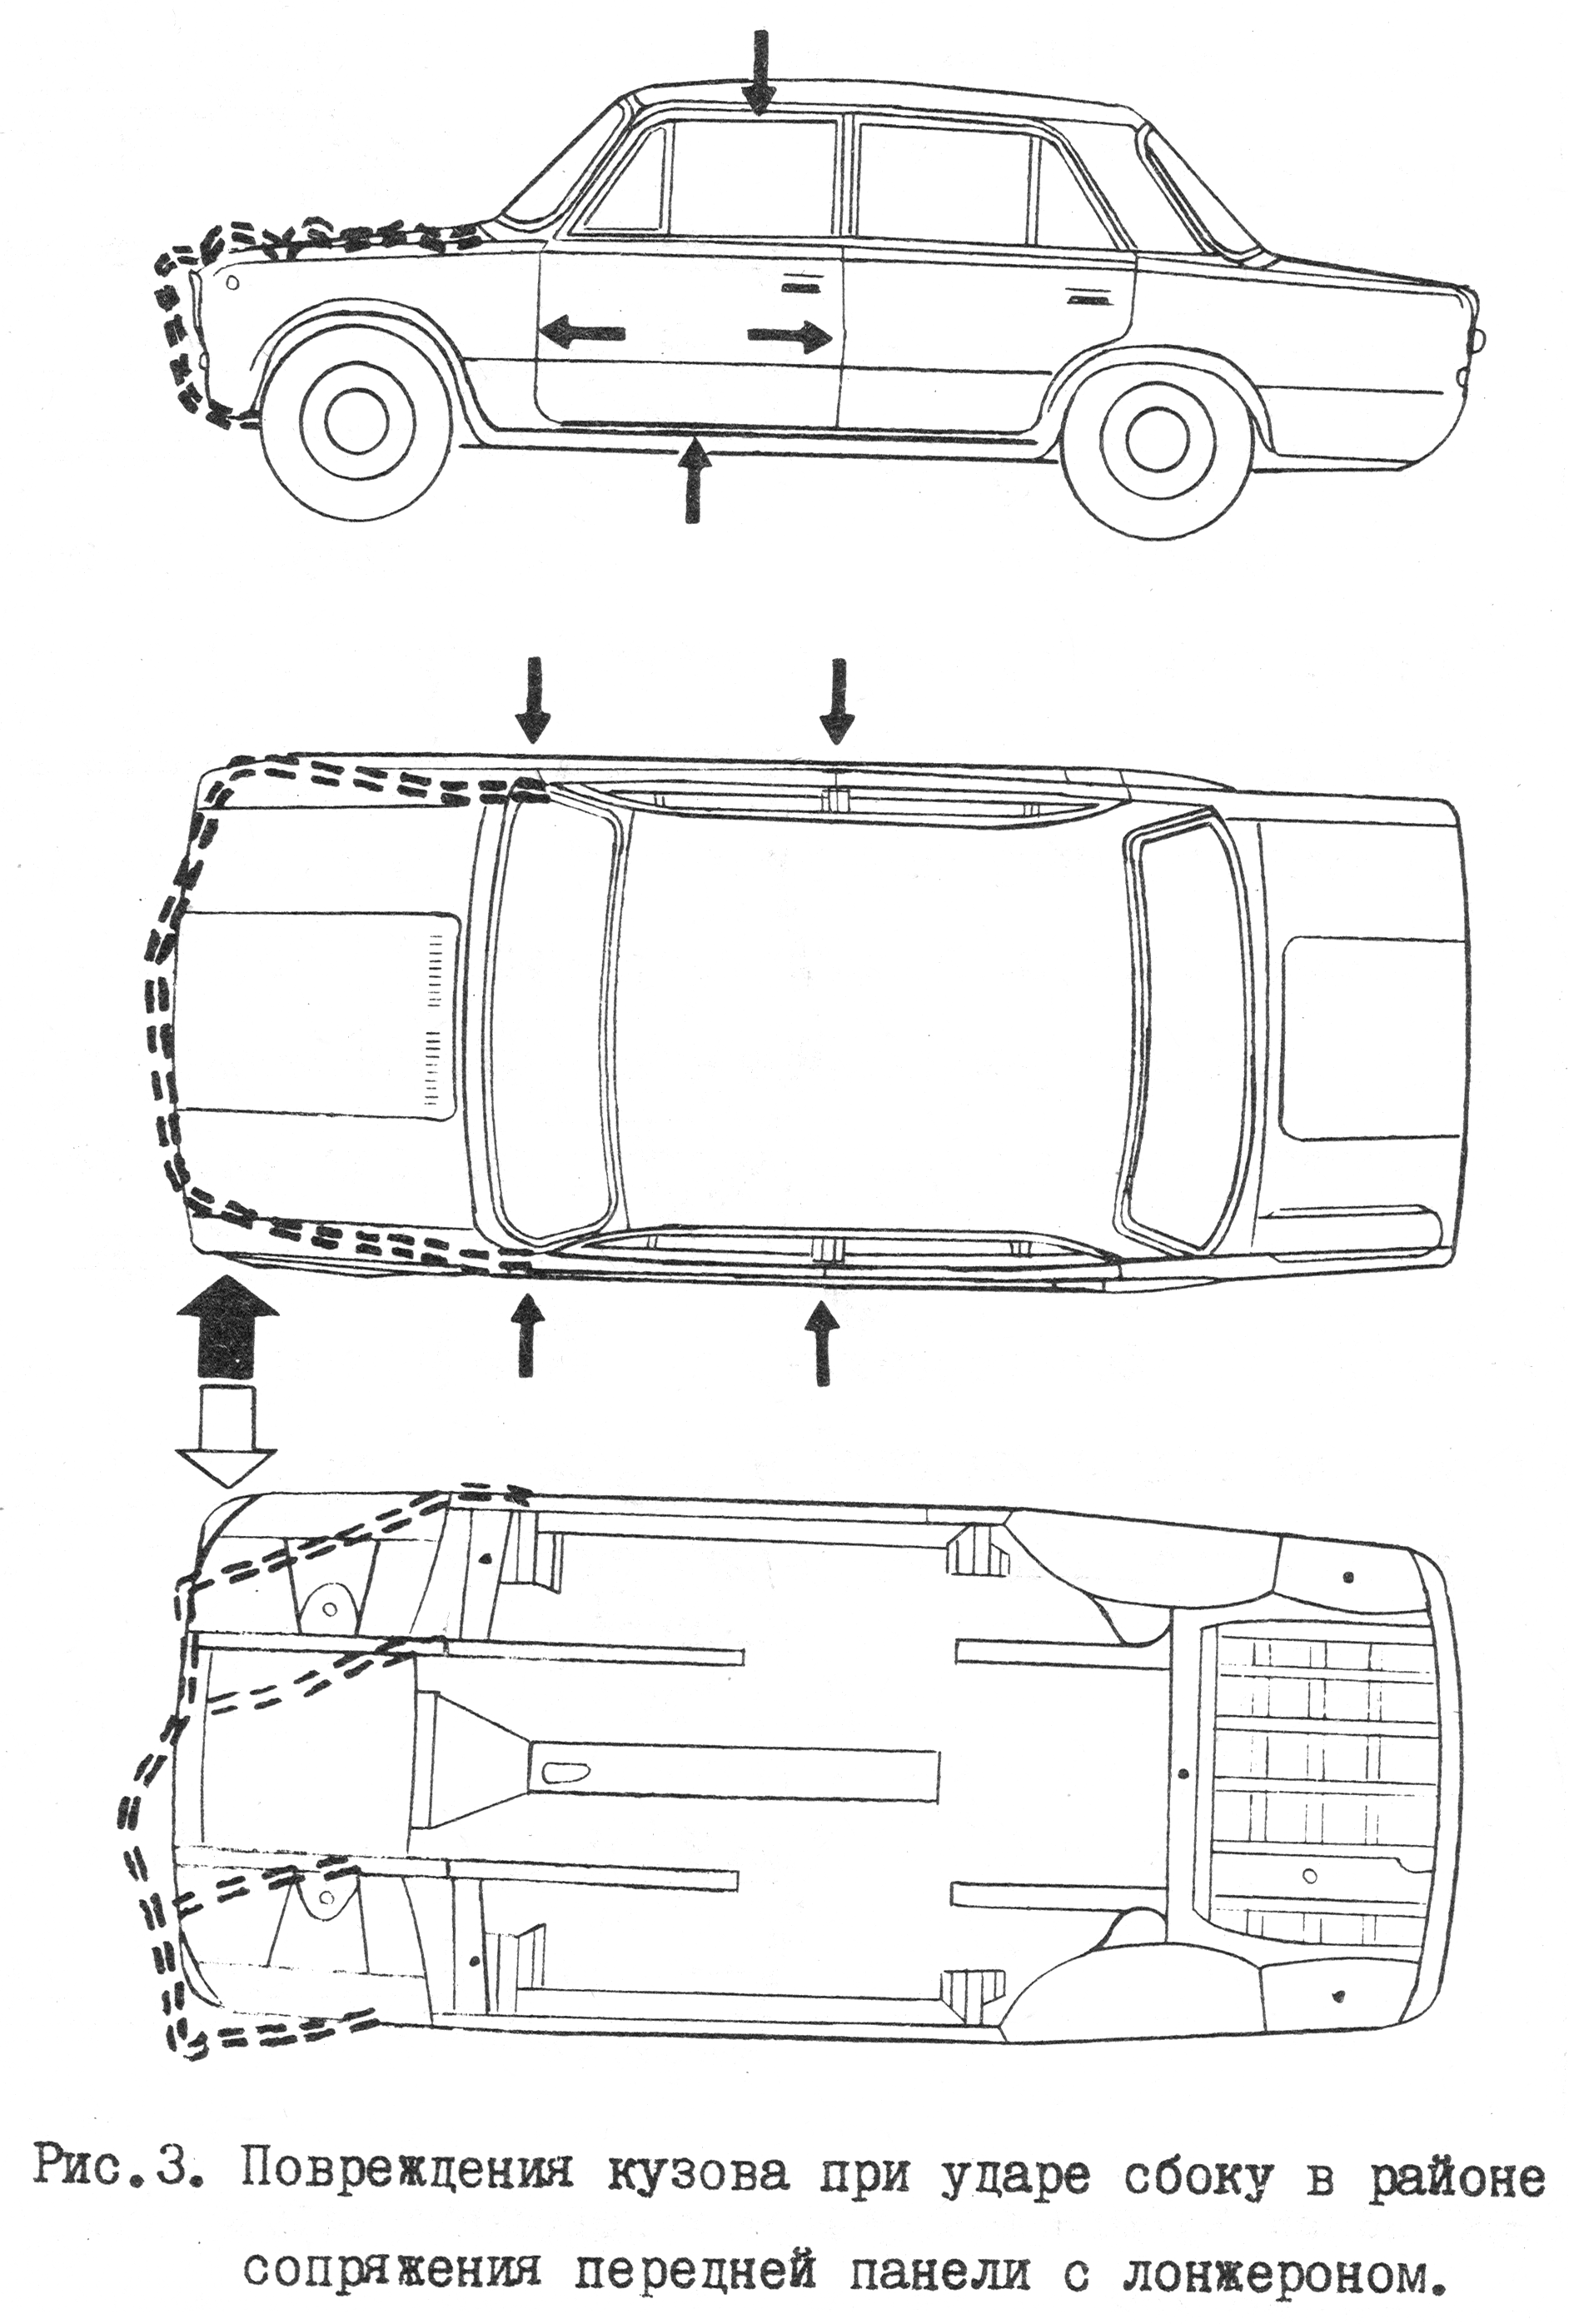 Правильная проверка лкп автомобиля – признаки вторичного окраса